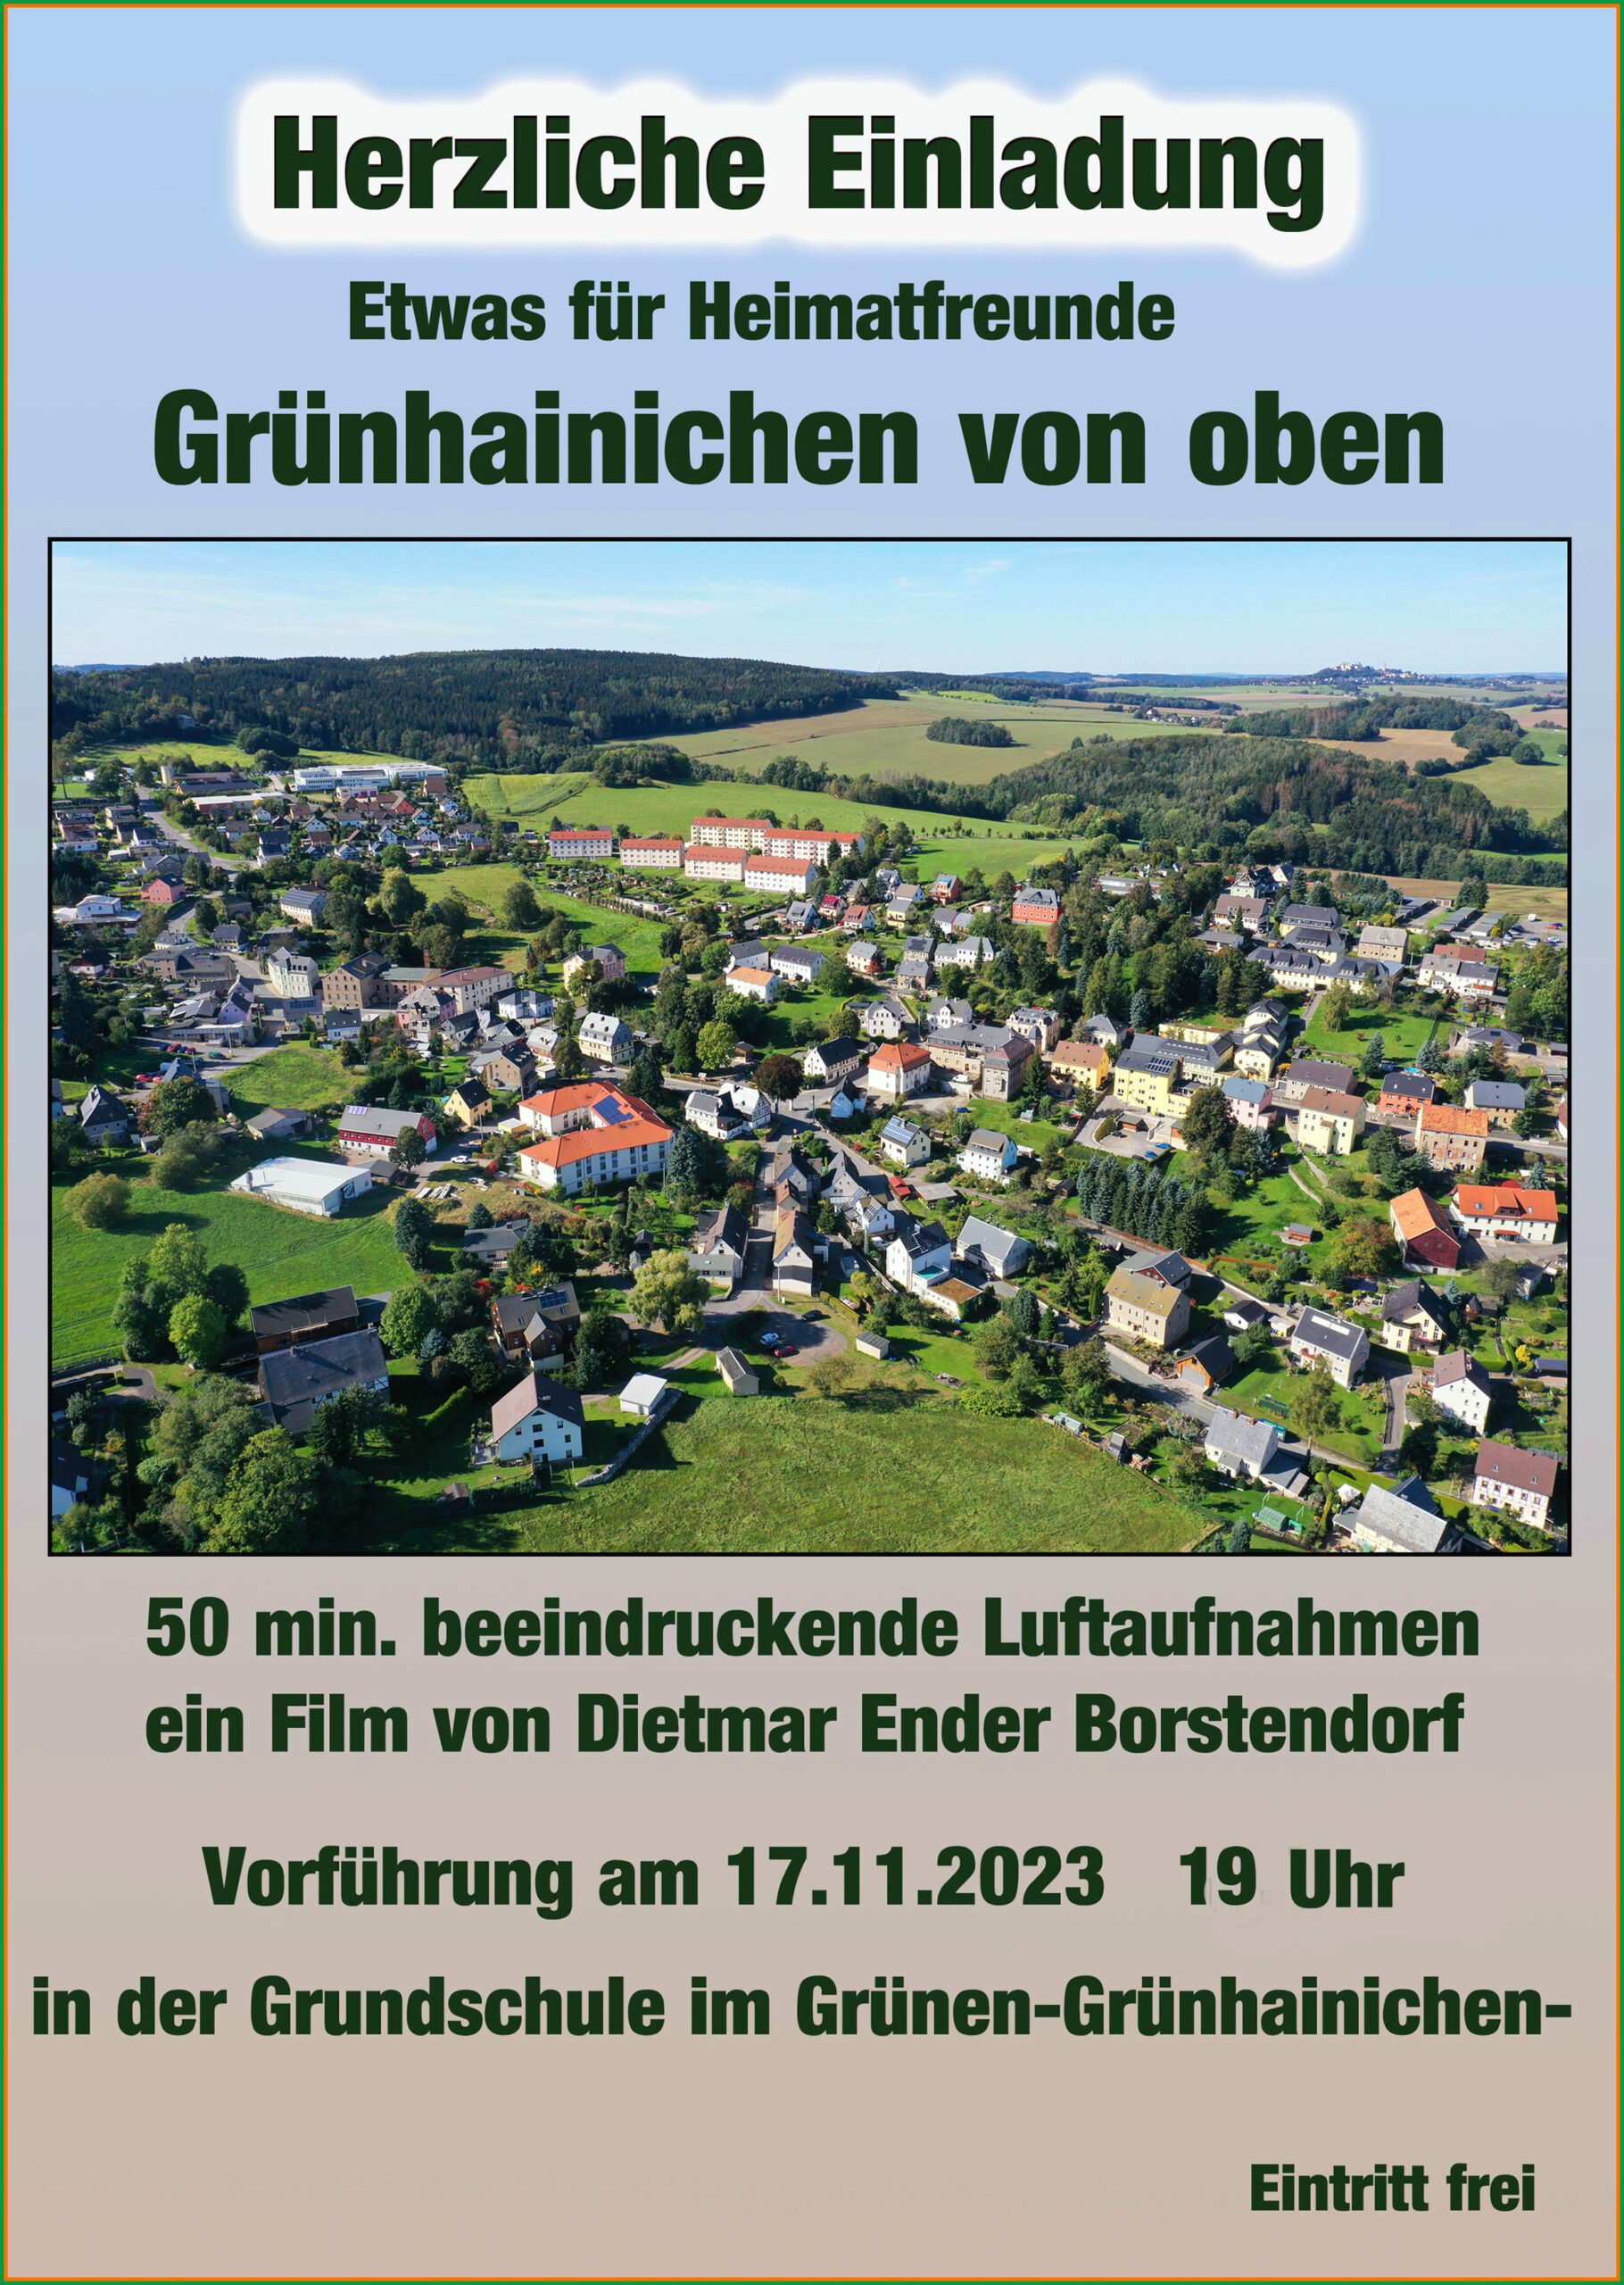 Filmvorführung "Grünhainichen von oben" am 17.11.2023